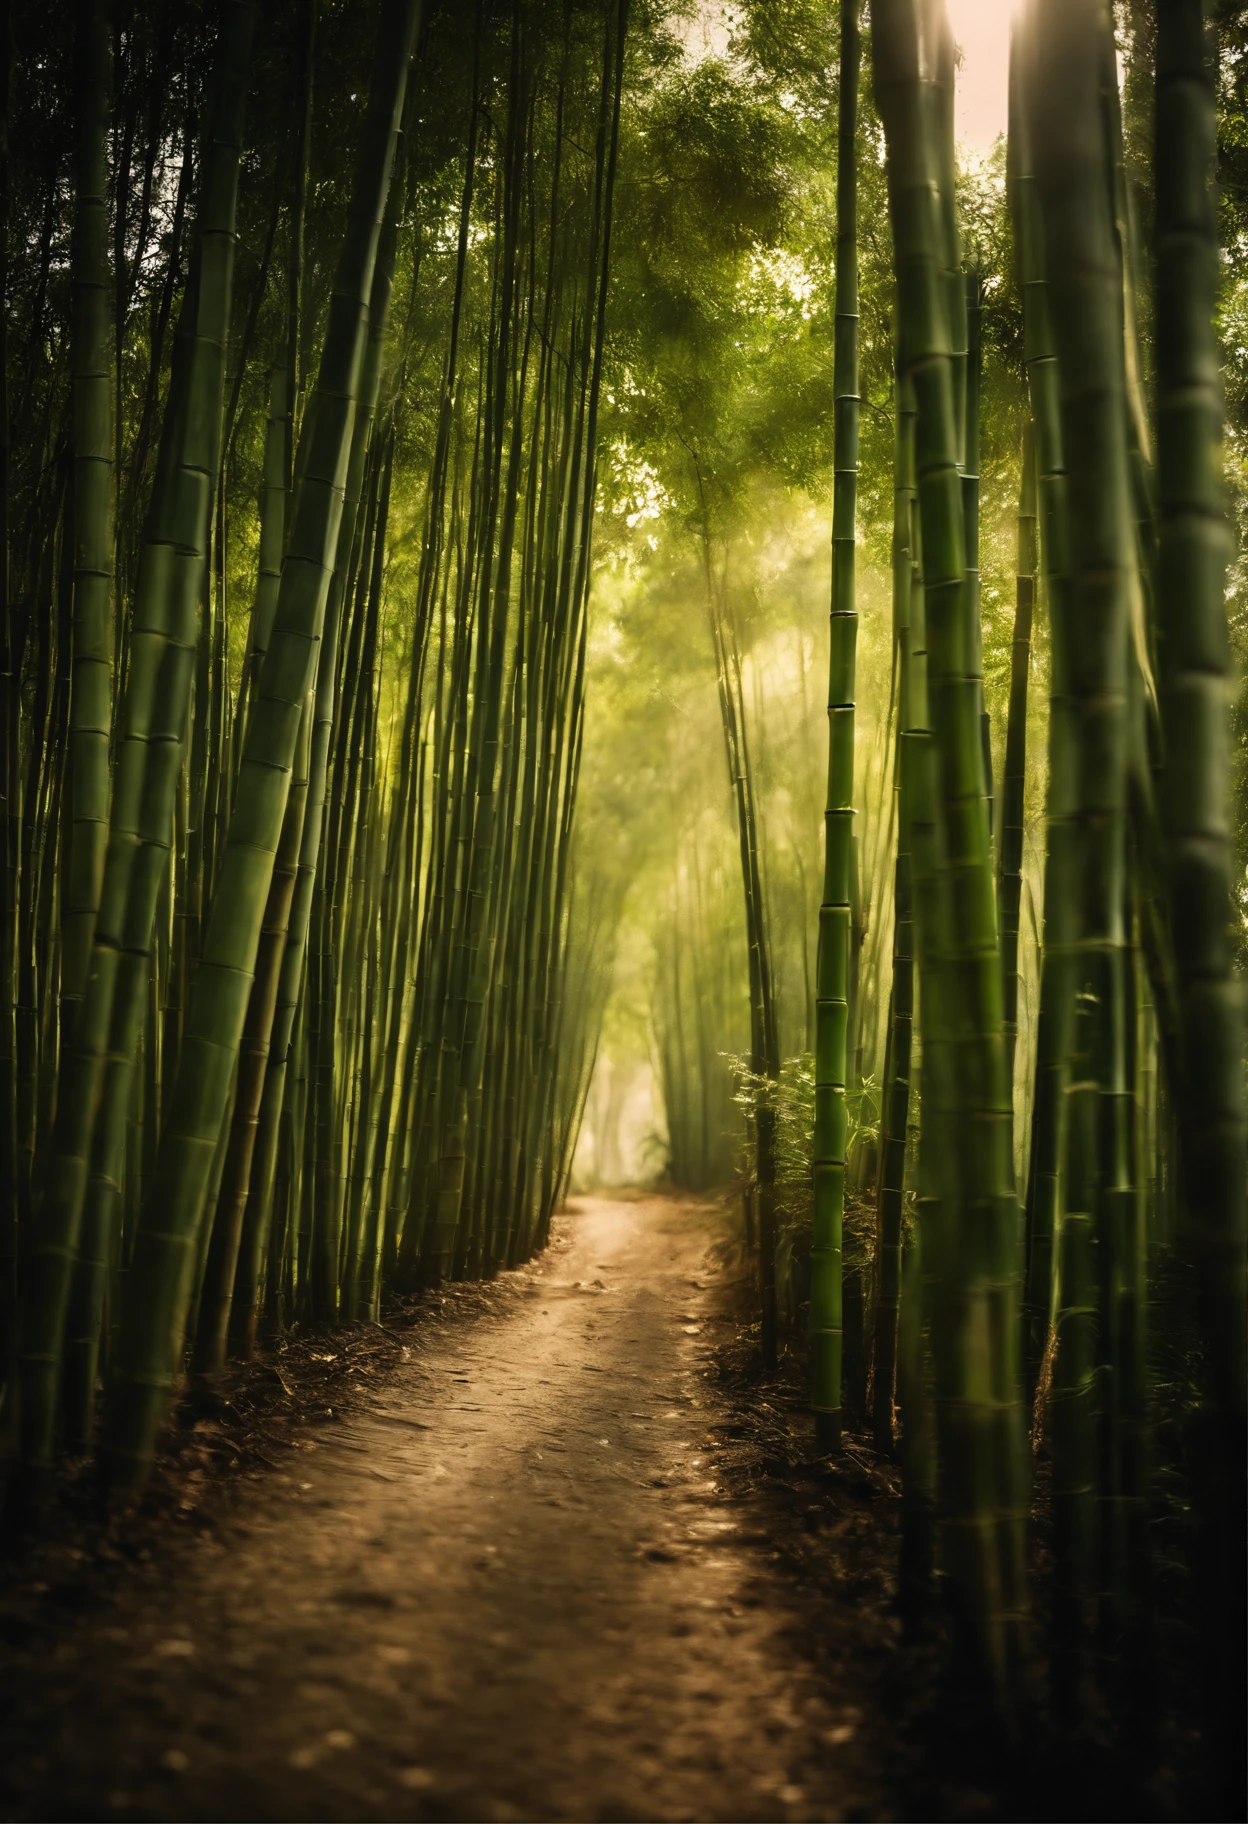 Buisson de bambou、Une route droite、oblong、soleil、